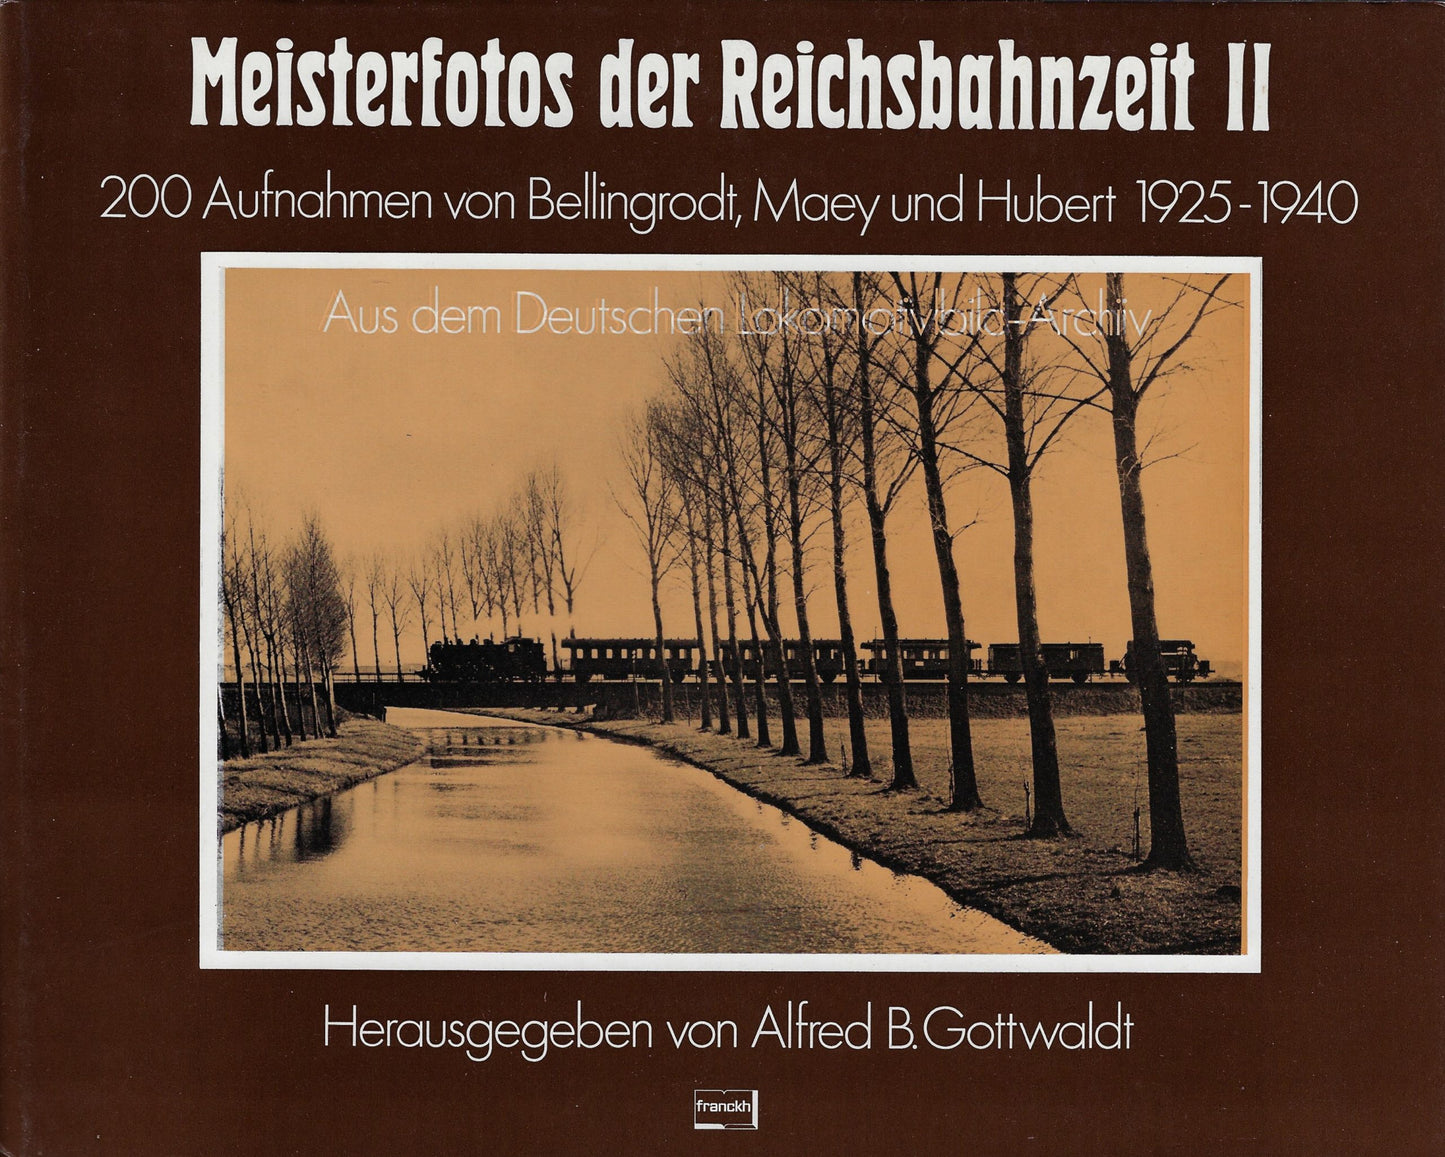 Meisterfoto's der Reichsbahnzeit I + II